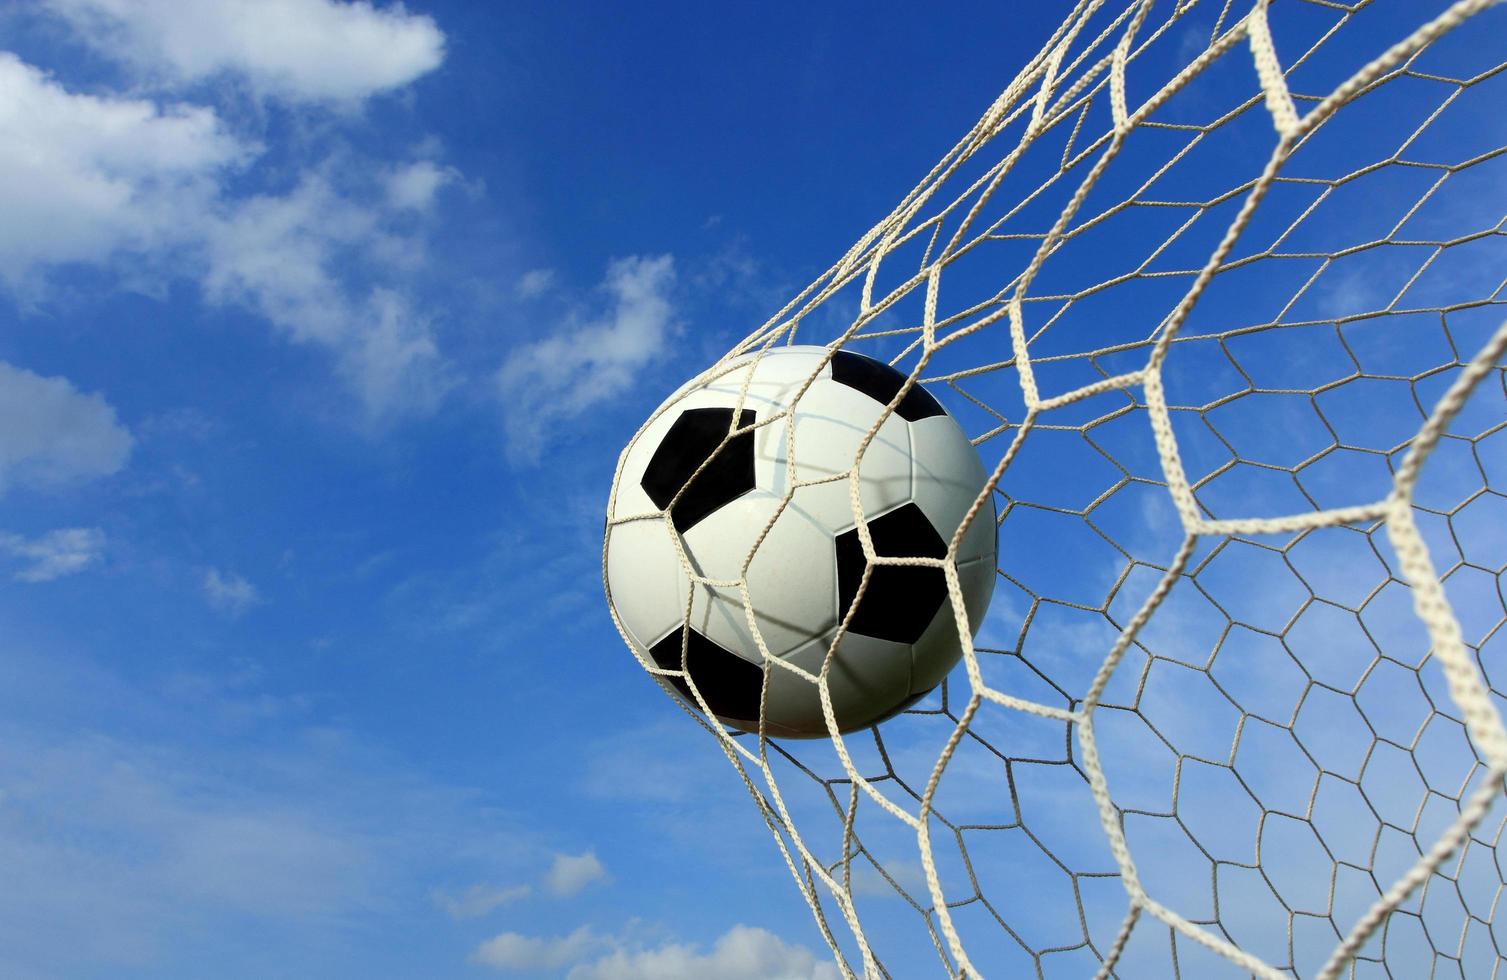 símbolo de éxito y victoria para el balón de fútbol clásico tiene color blanco y negro entrando en la red de gol después de disparar en el juego con un fondo de cielo azul. concepto de éxito. foto